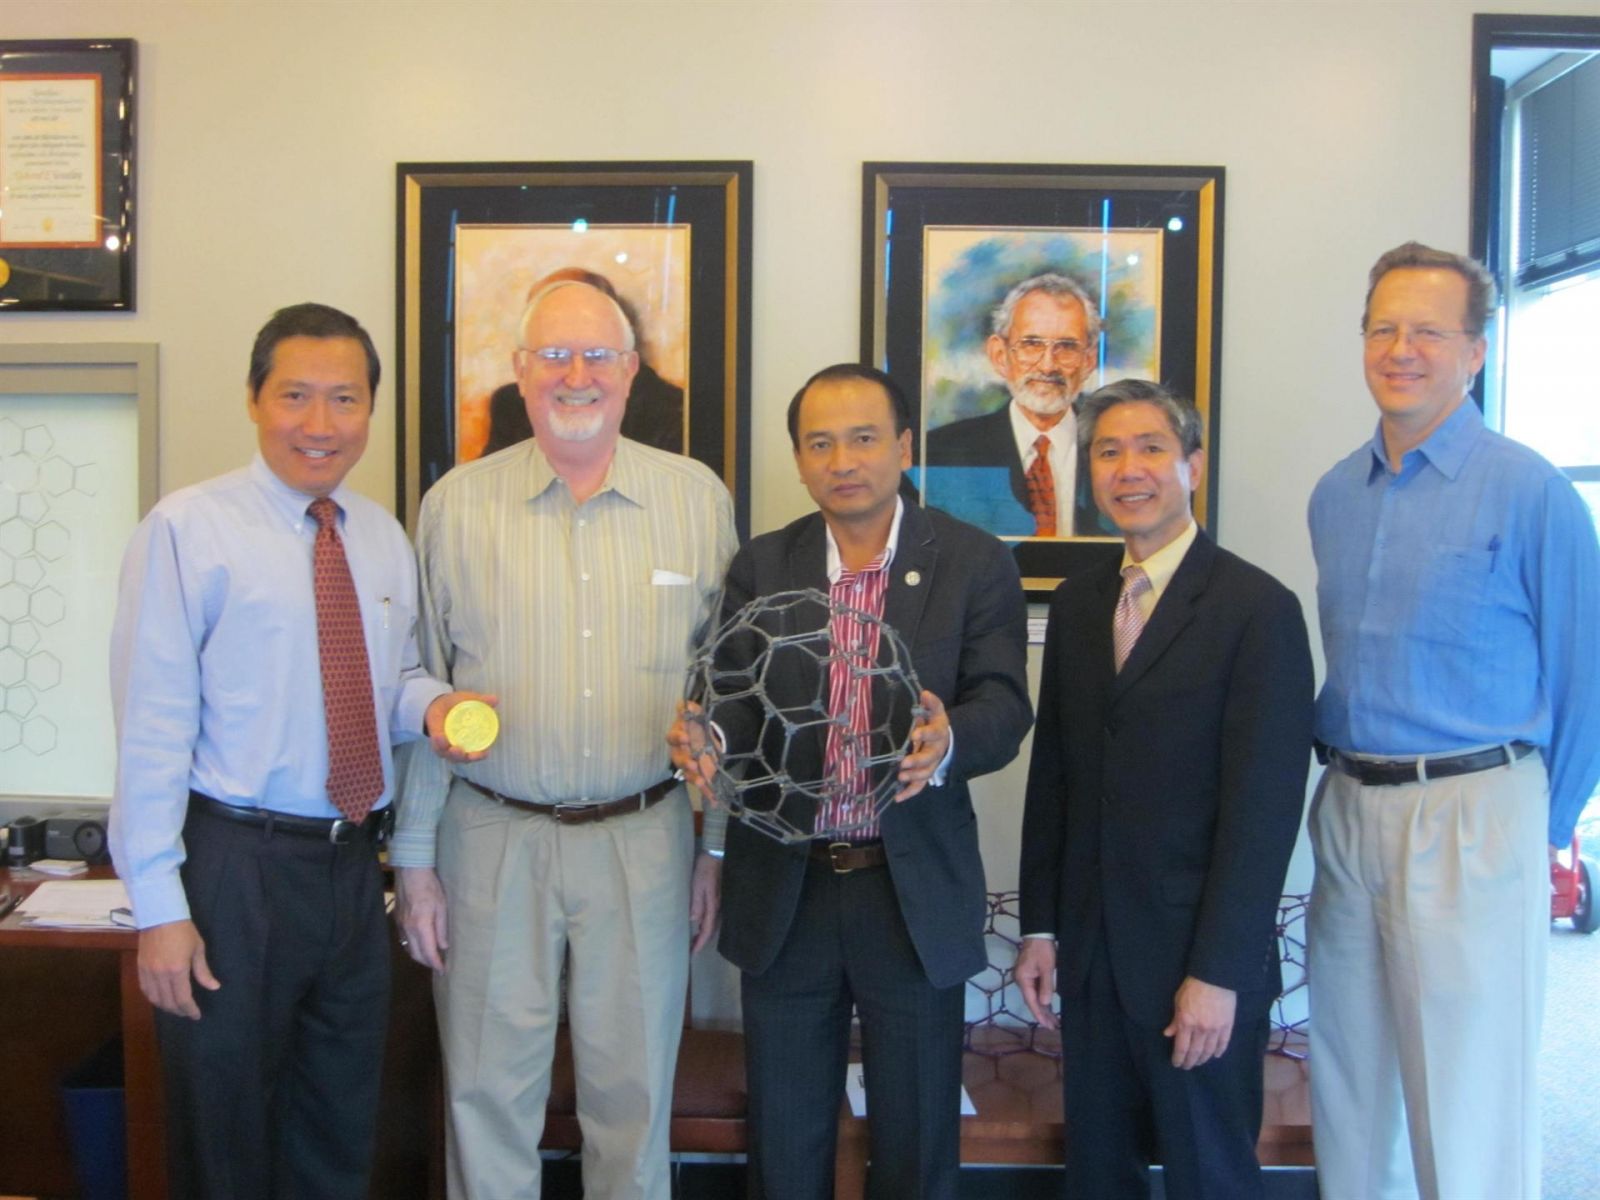 Chuyến thăm và làm việc của Chủ tịch công ty Quốc tế IQCT với đối tác trong lĩnh vực công nghệ nano  tại trung tâm nghiên cứu Đại học Rice (Mỹ) (11/2010)